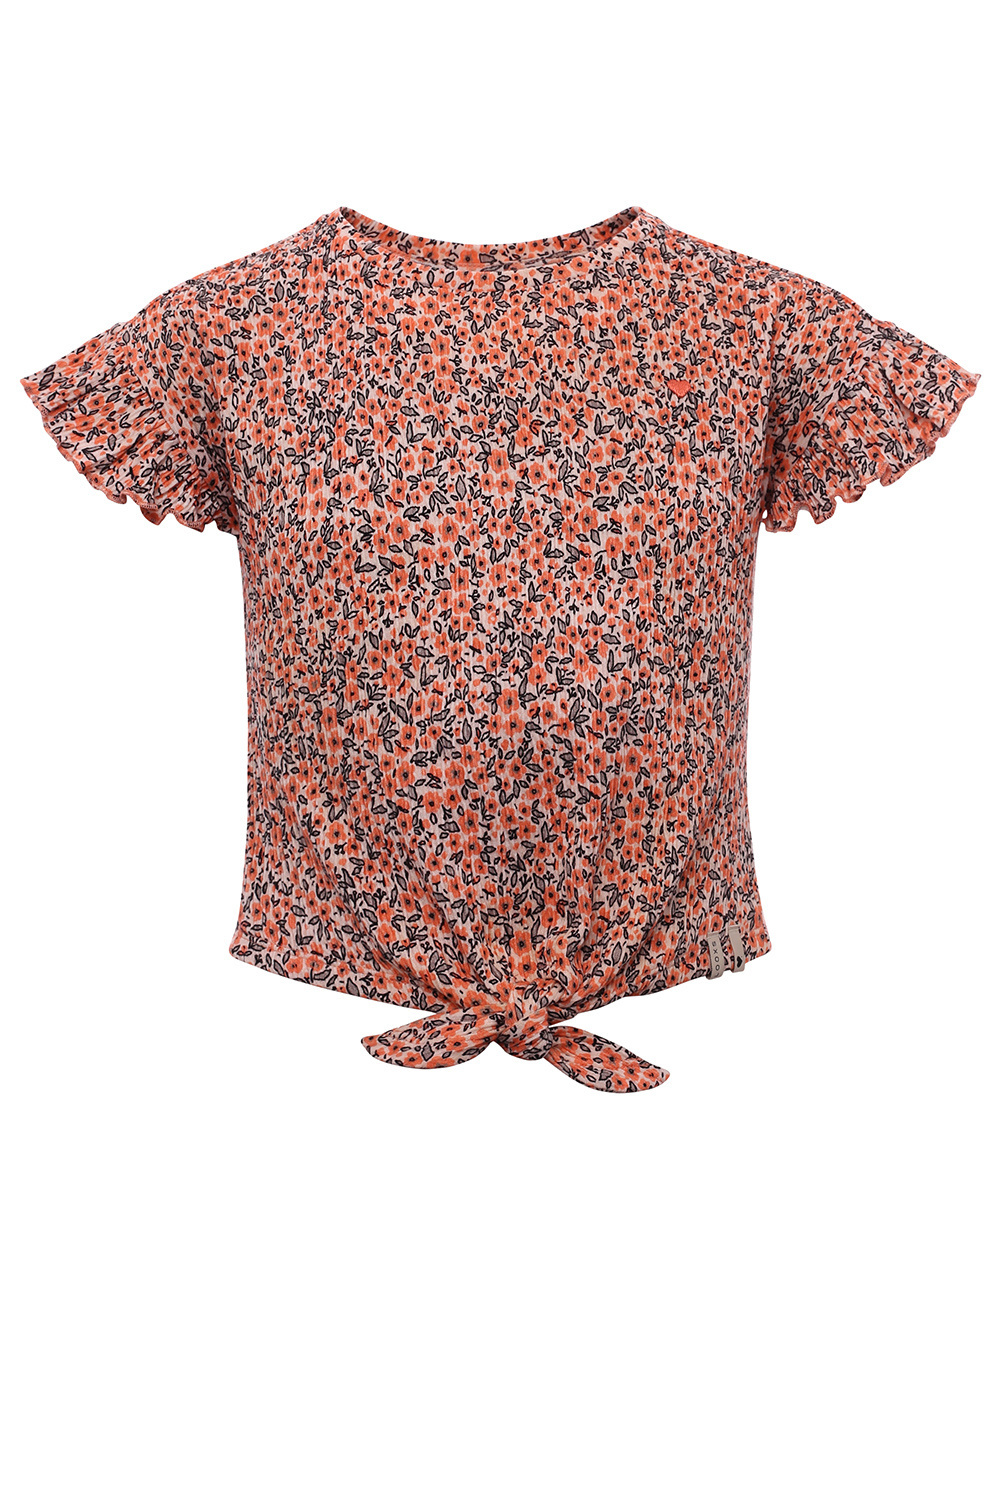 Looxs Revolution 2213-7478-996 Meisjes Shirt - Maat 110 - Oranje van Katoen